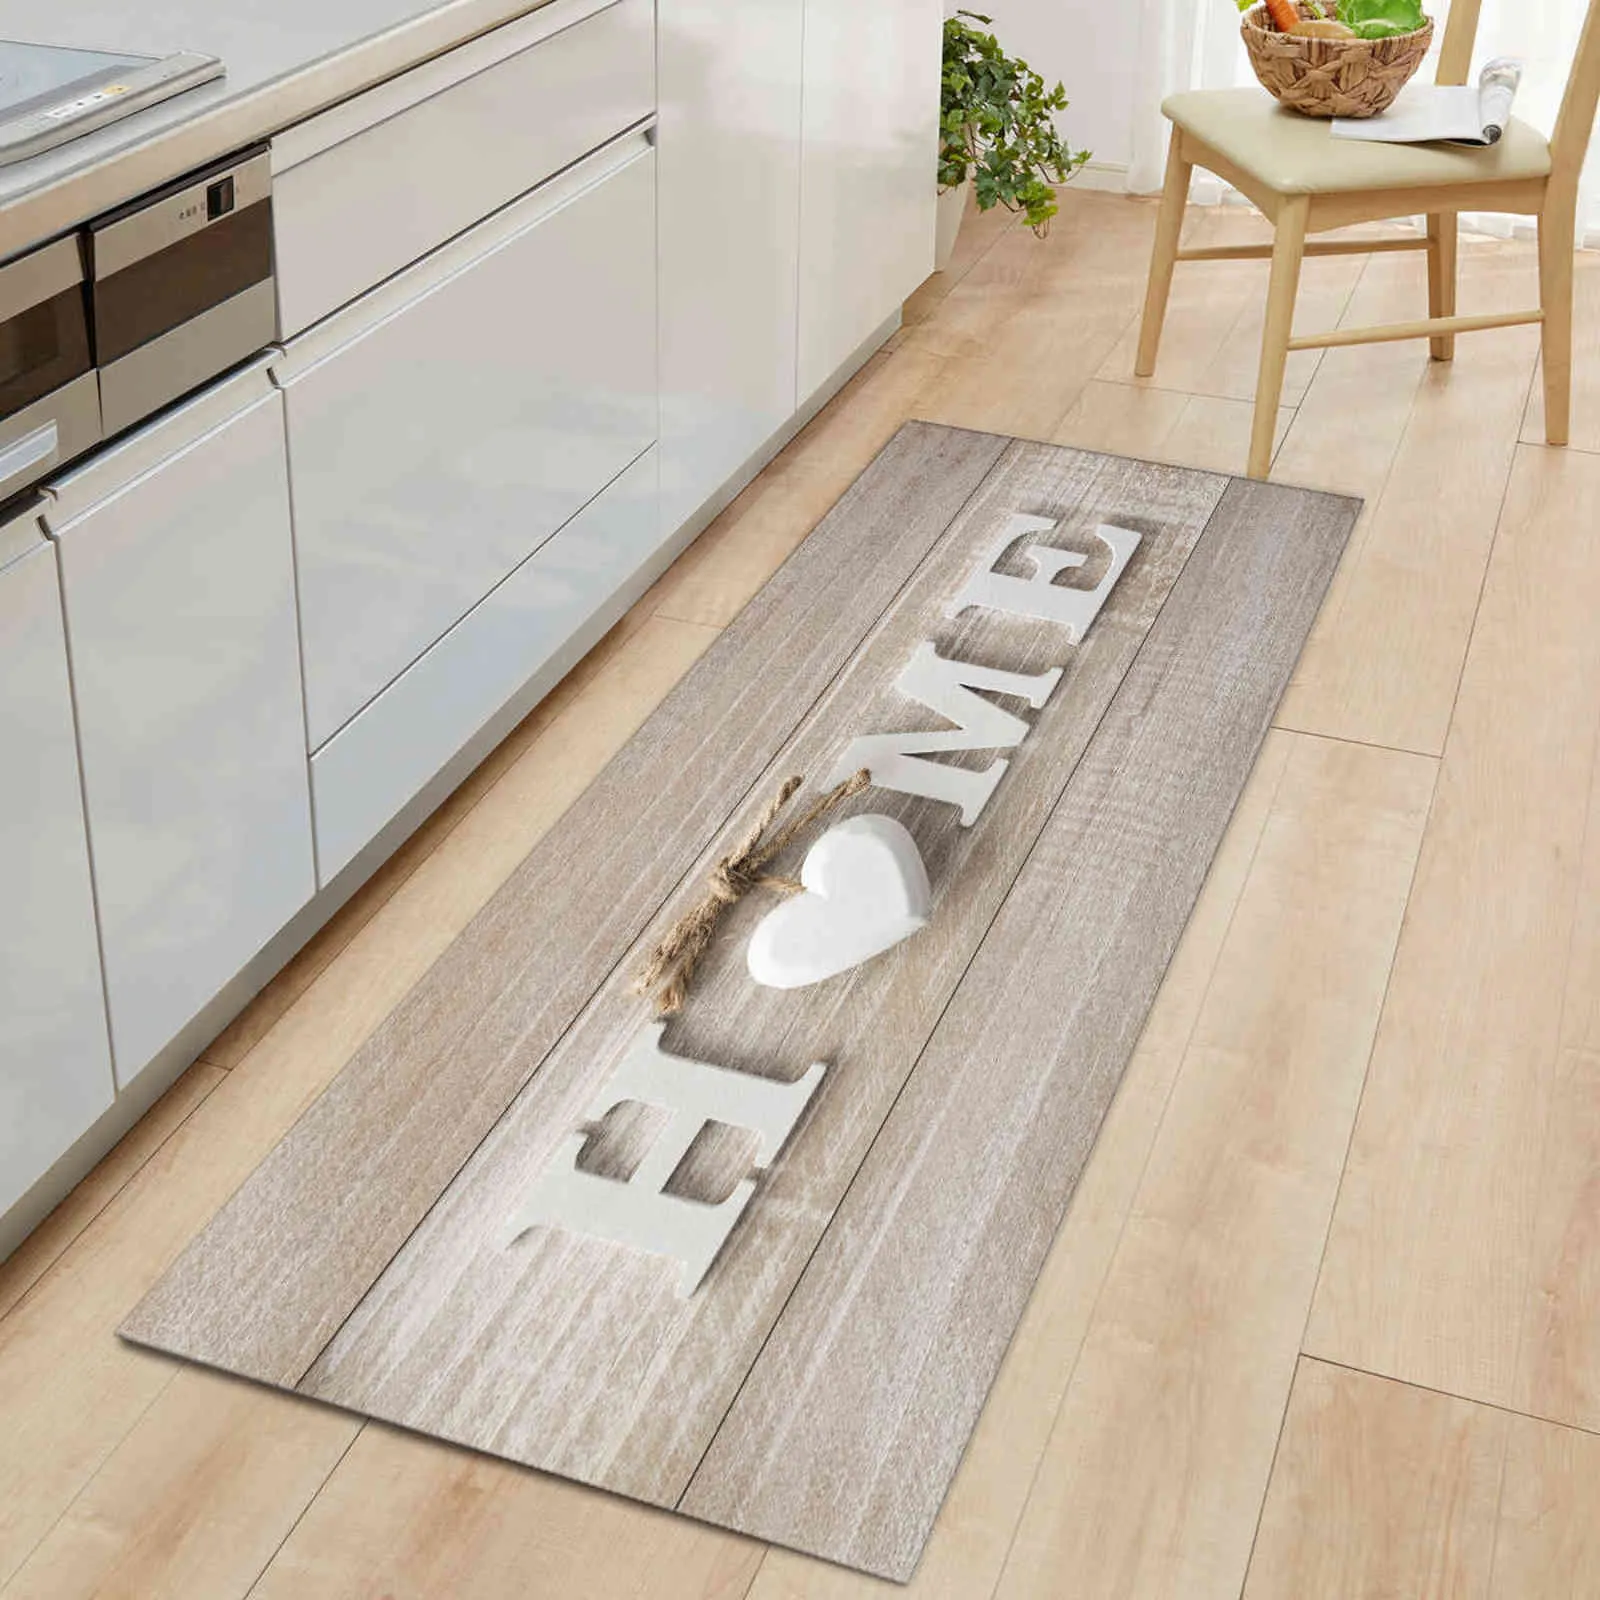 Trä korndörr köksmatta mattan glidande hem golv mattor Välkommen s för främre vardagsrum